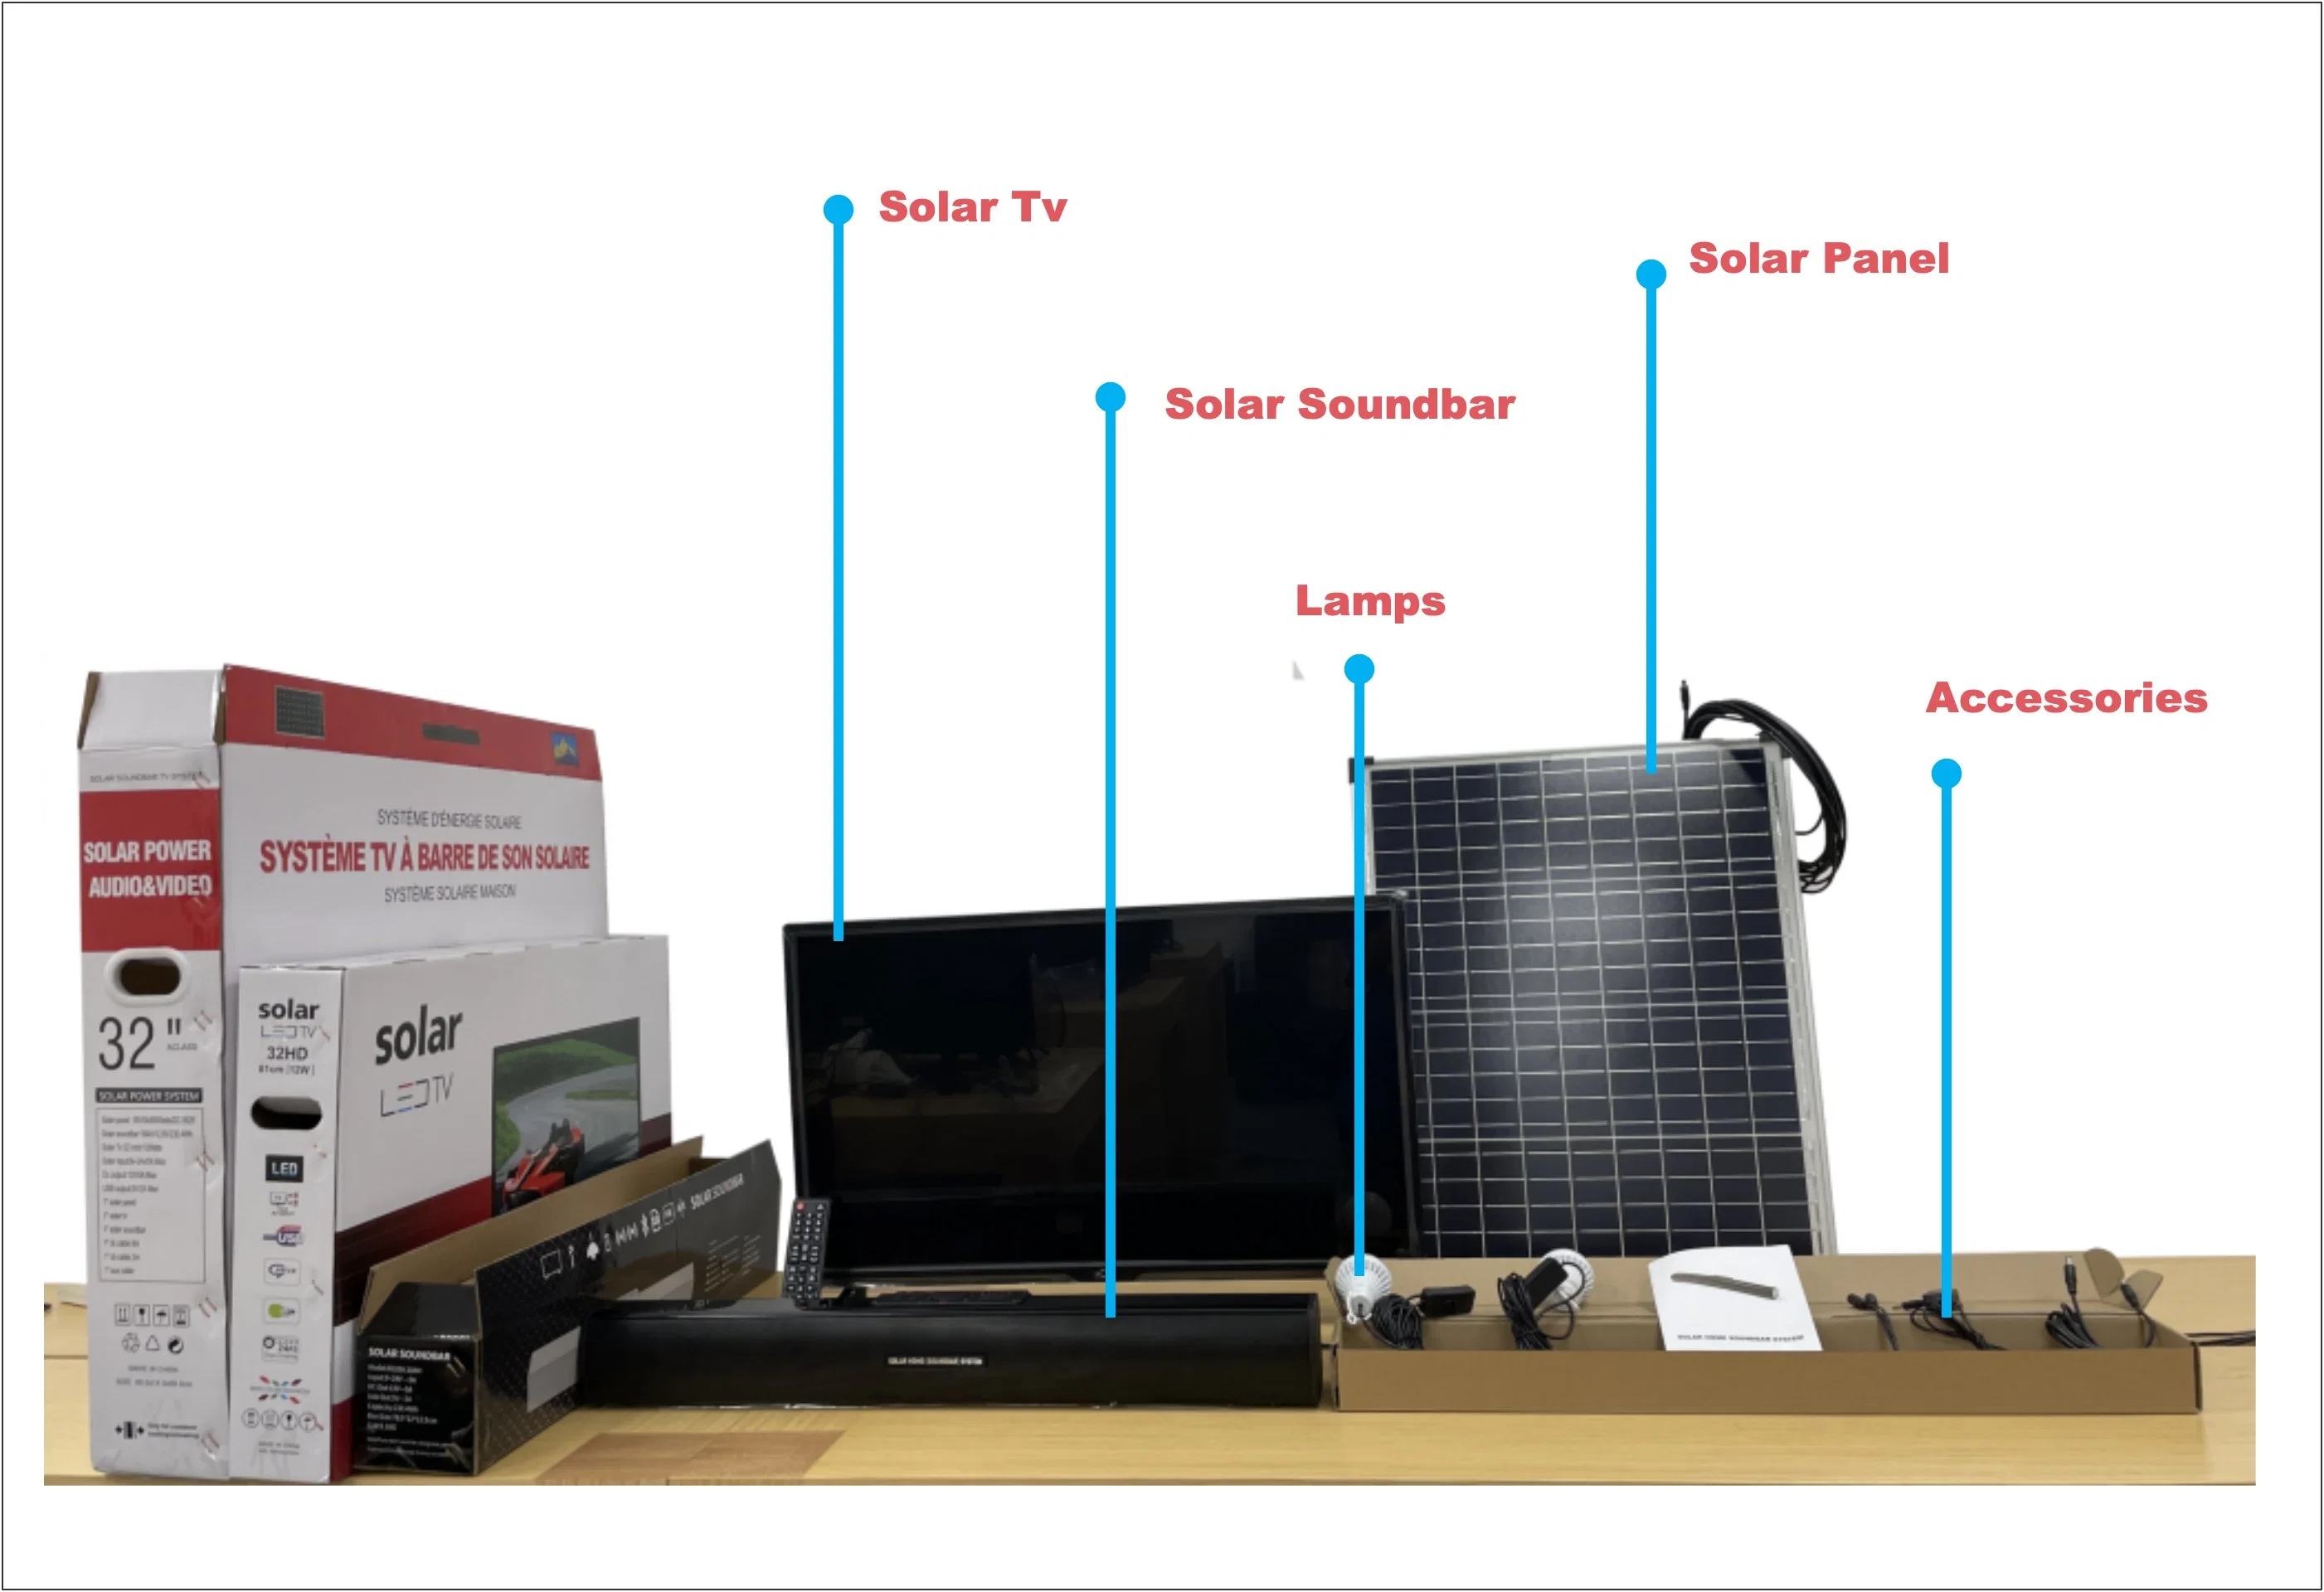 Pcv Sound-Bar Solaire Système TV Sound-Bar Withhifi Qualité en charge Bluetooth, la carte de TF, radio FM, USB, AUX, faible consommation énergétique solaire TV ne coûte que 12 W par heure